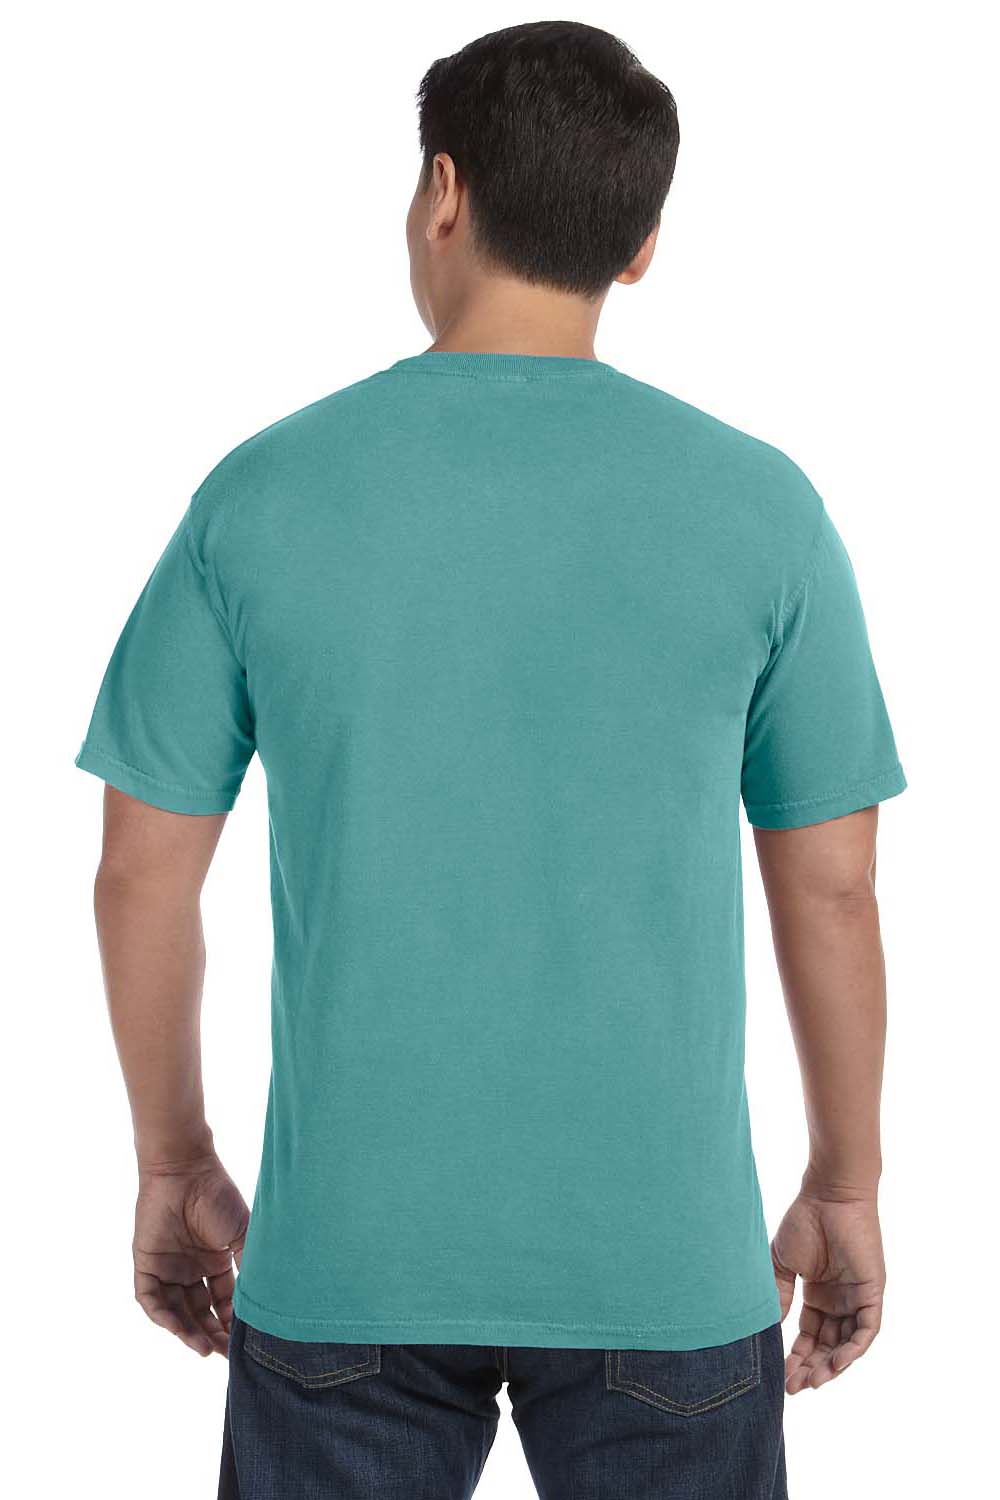 Comfort Colors C1717 Mens Short Sleeve Crewneck T-Shirt Seafoam Green Back